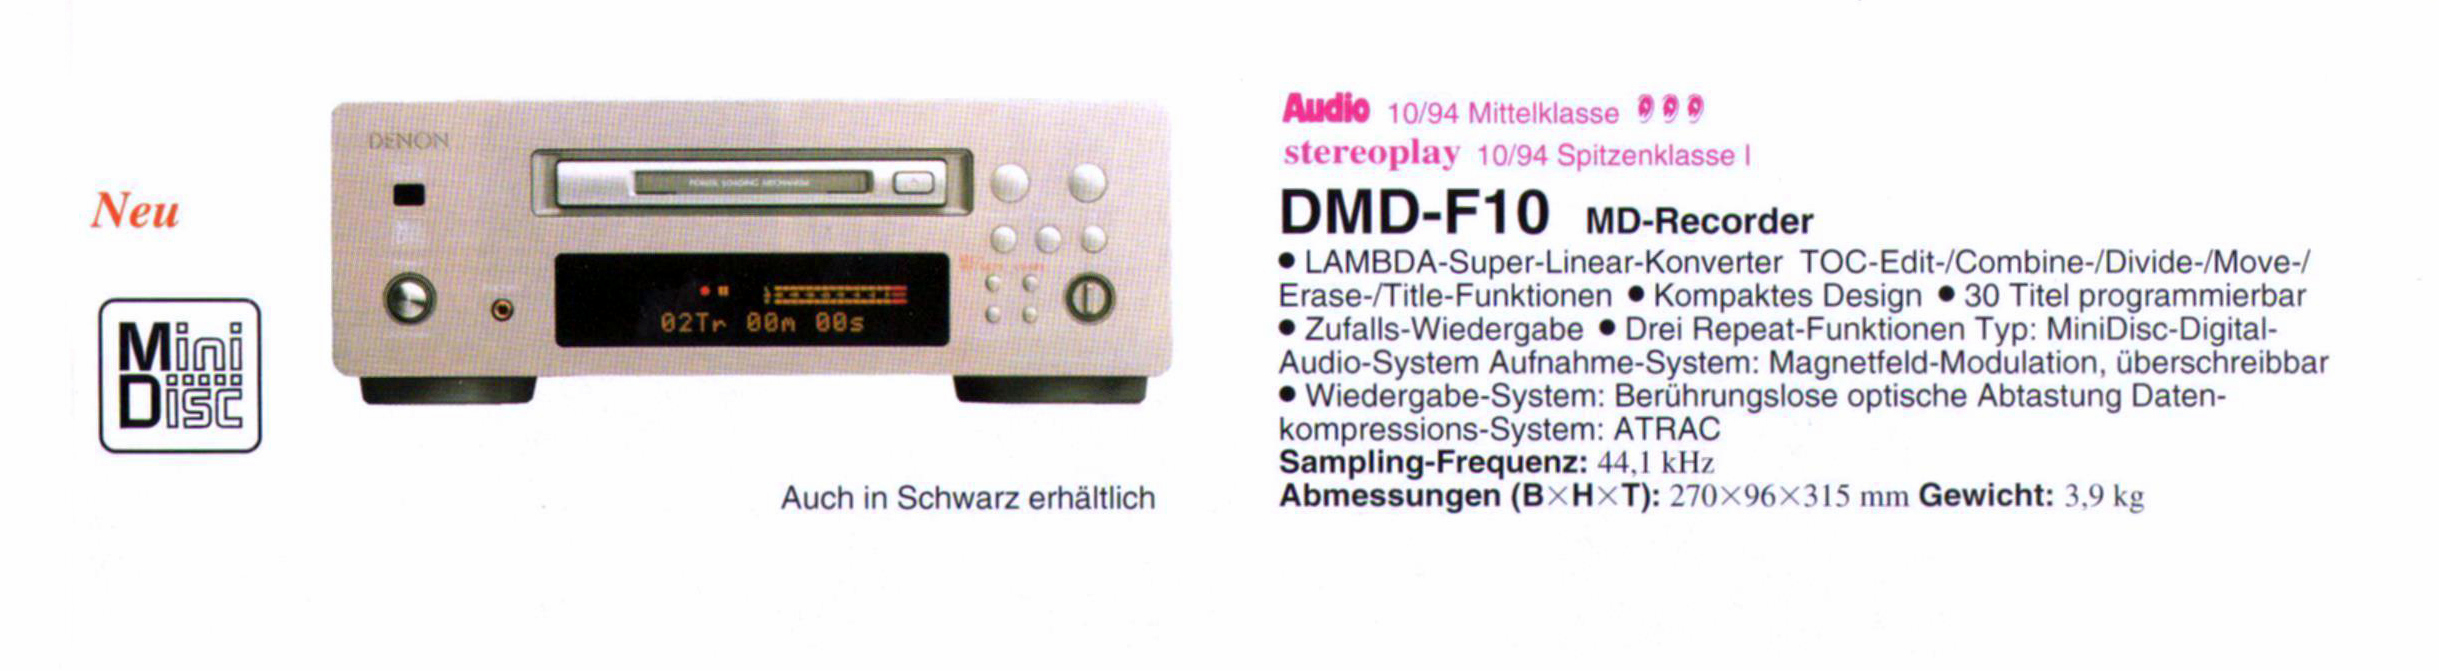 Denon DMD-F 10-Prosepkt-1994.jpg